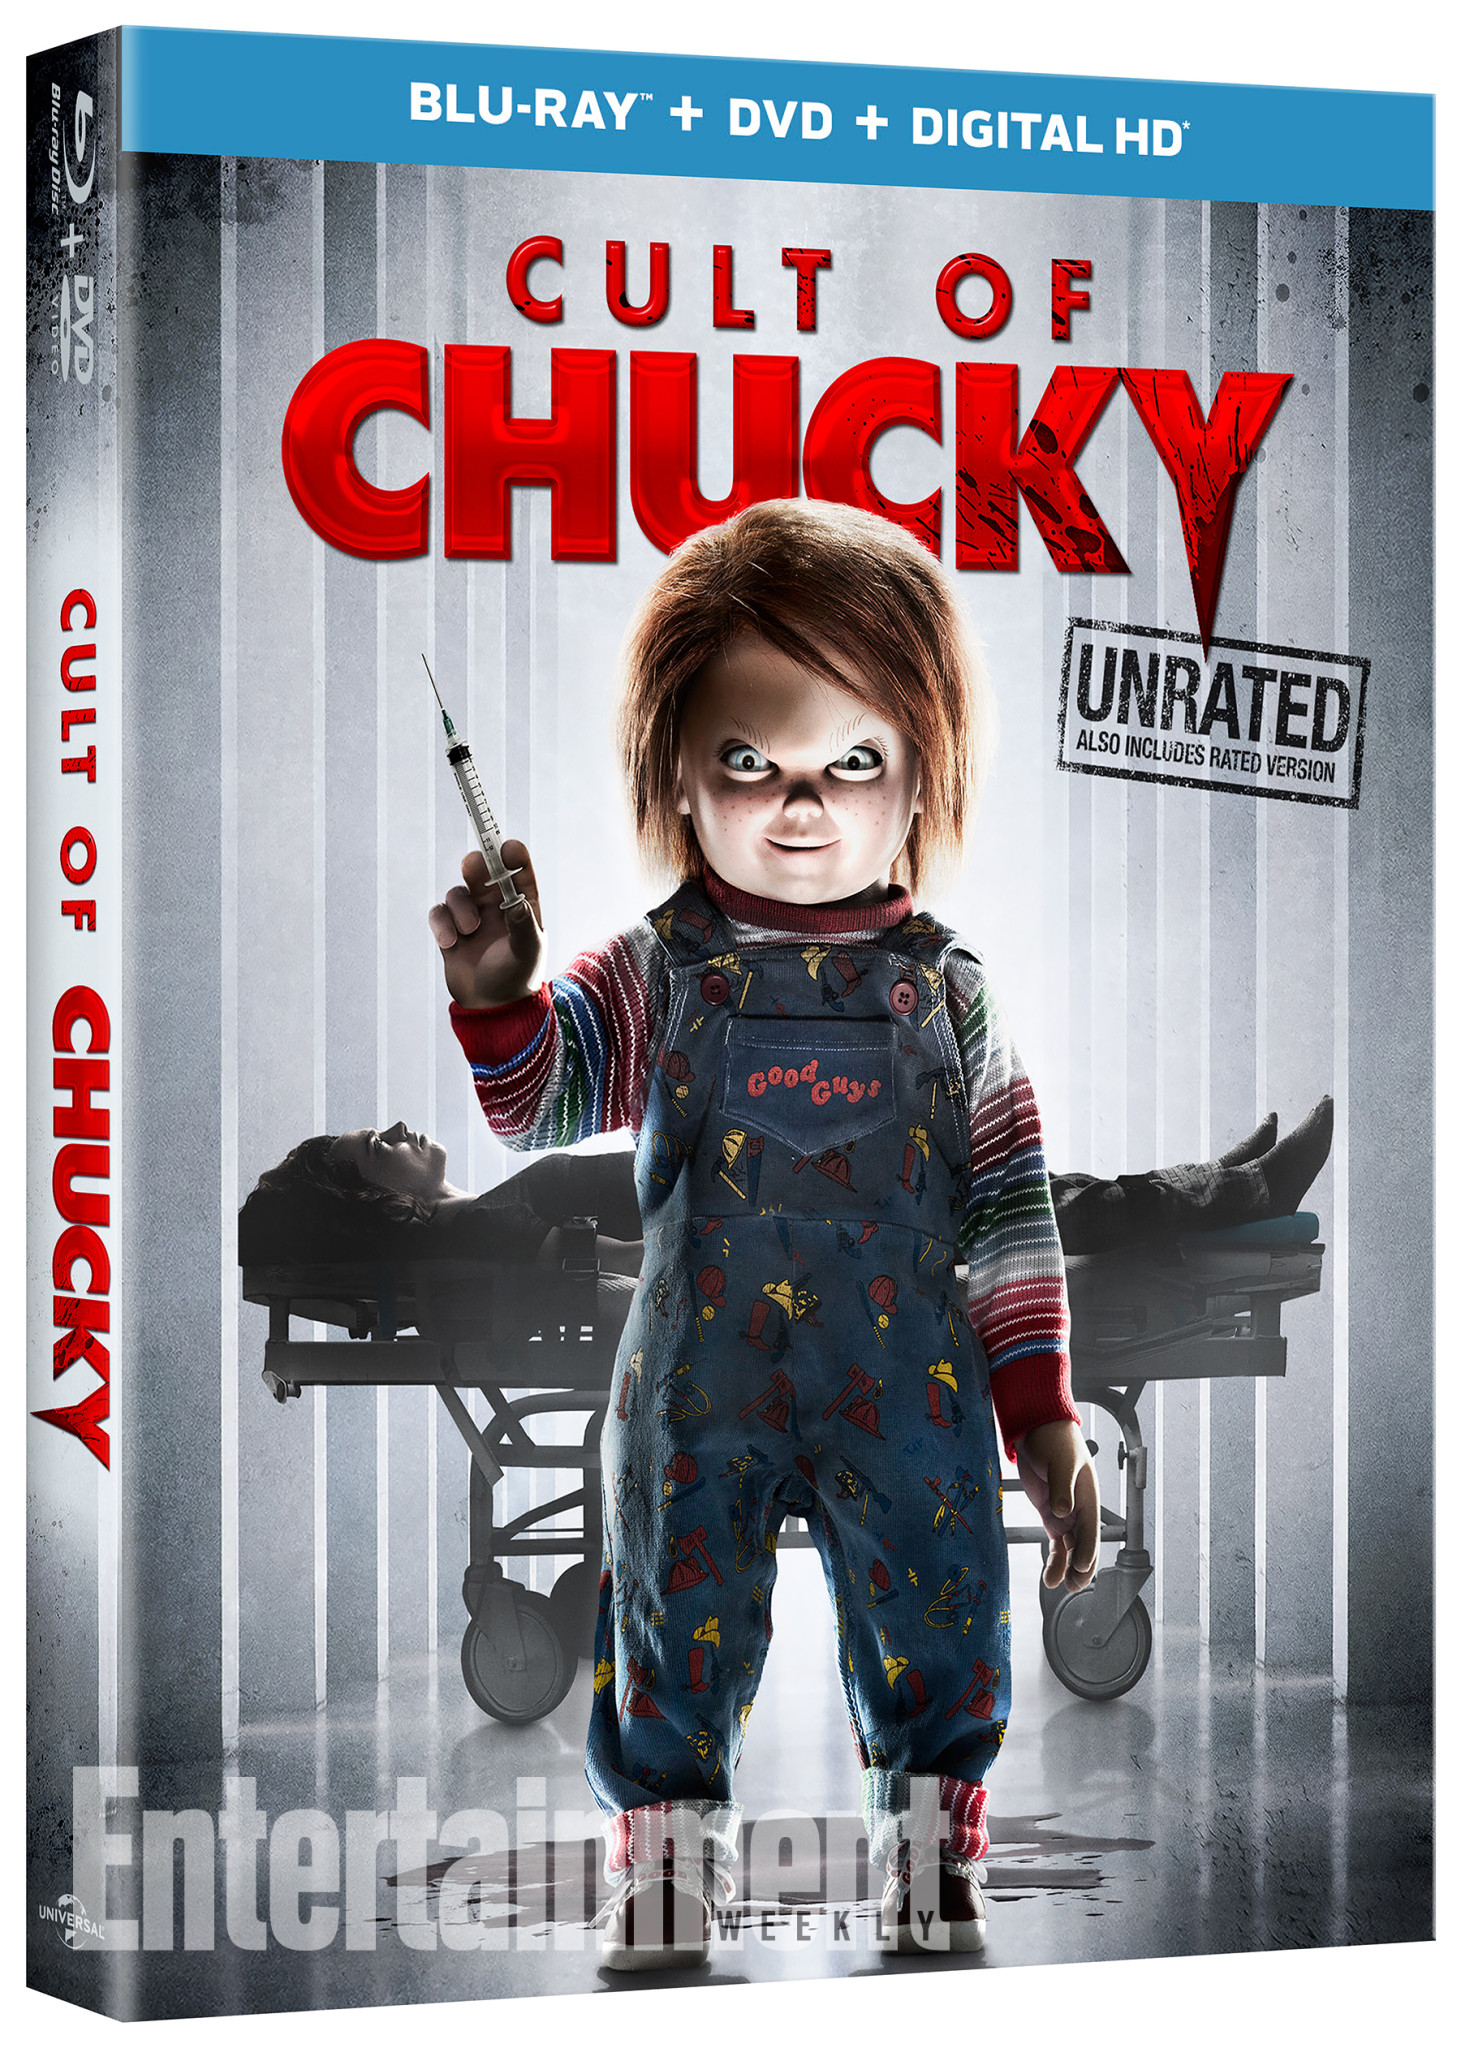 $!Chucky es más sanguinario que nunca en primer tráiler de “Cult of Chucky”